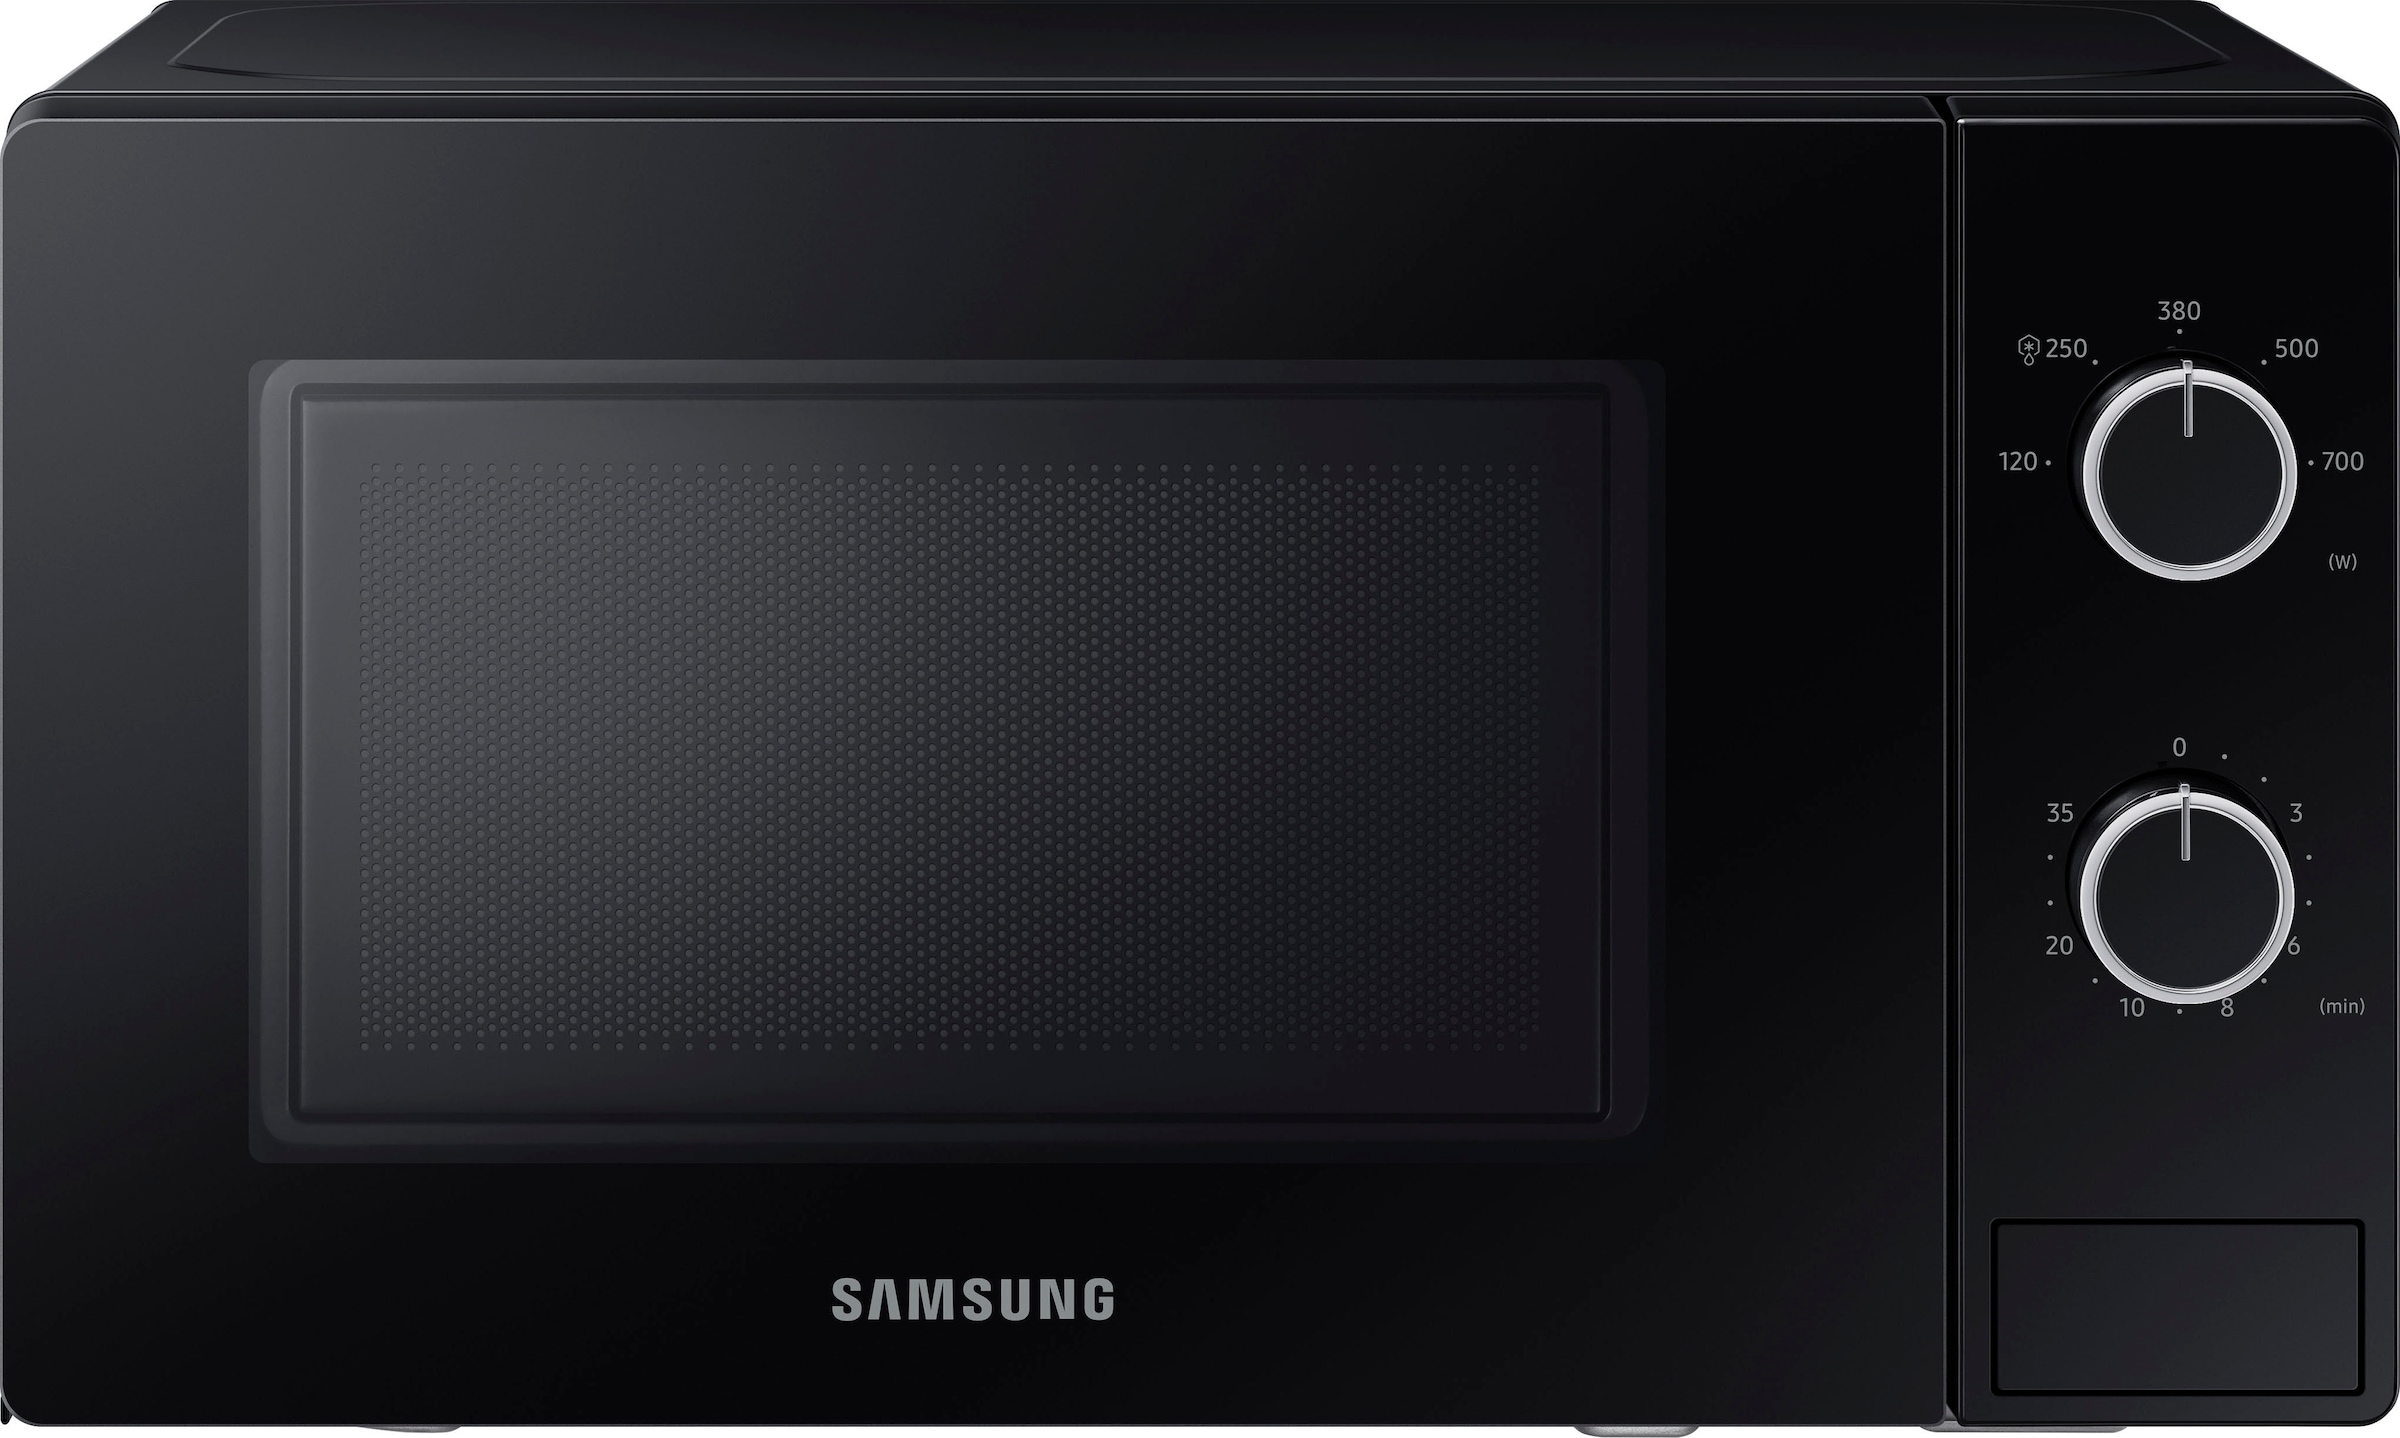 Samsung Mikrowelle »MS20A3010AL/EG«, Mikrowelle, 700 W, Einfache Handhabung  in schickem Design kaufen bei OTTO